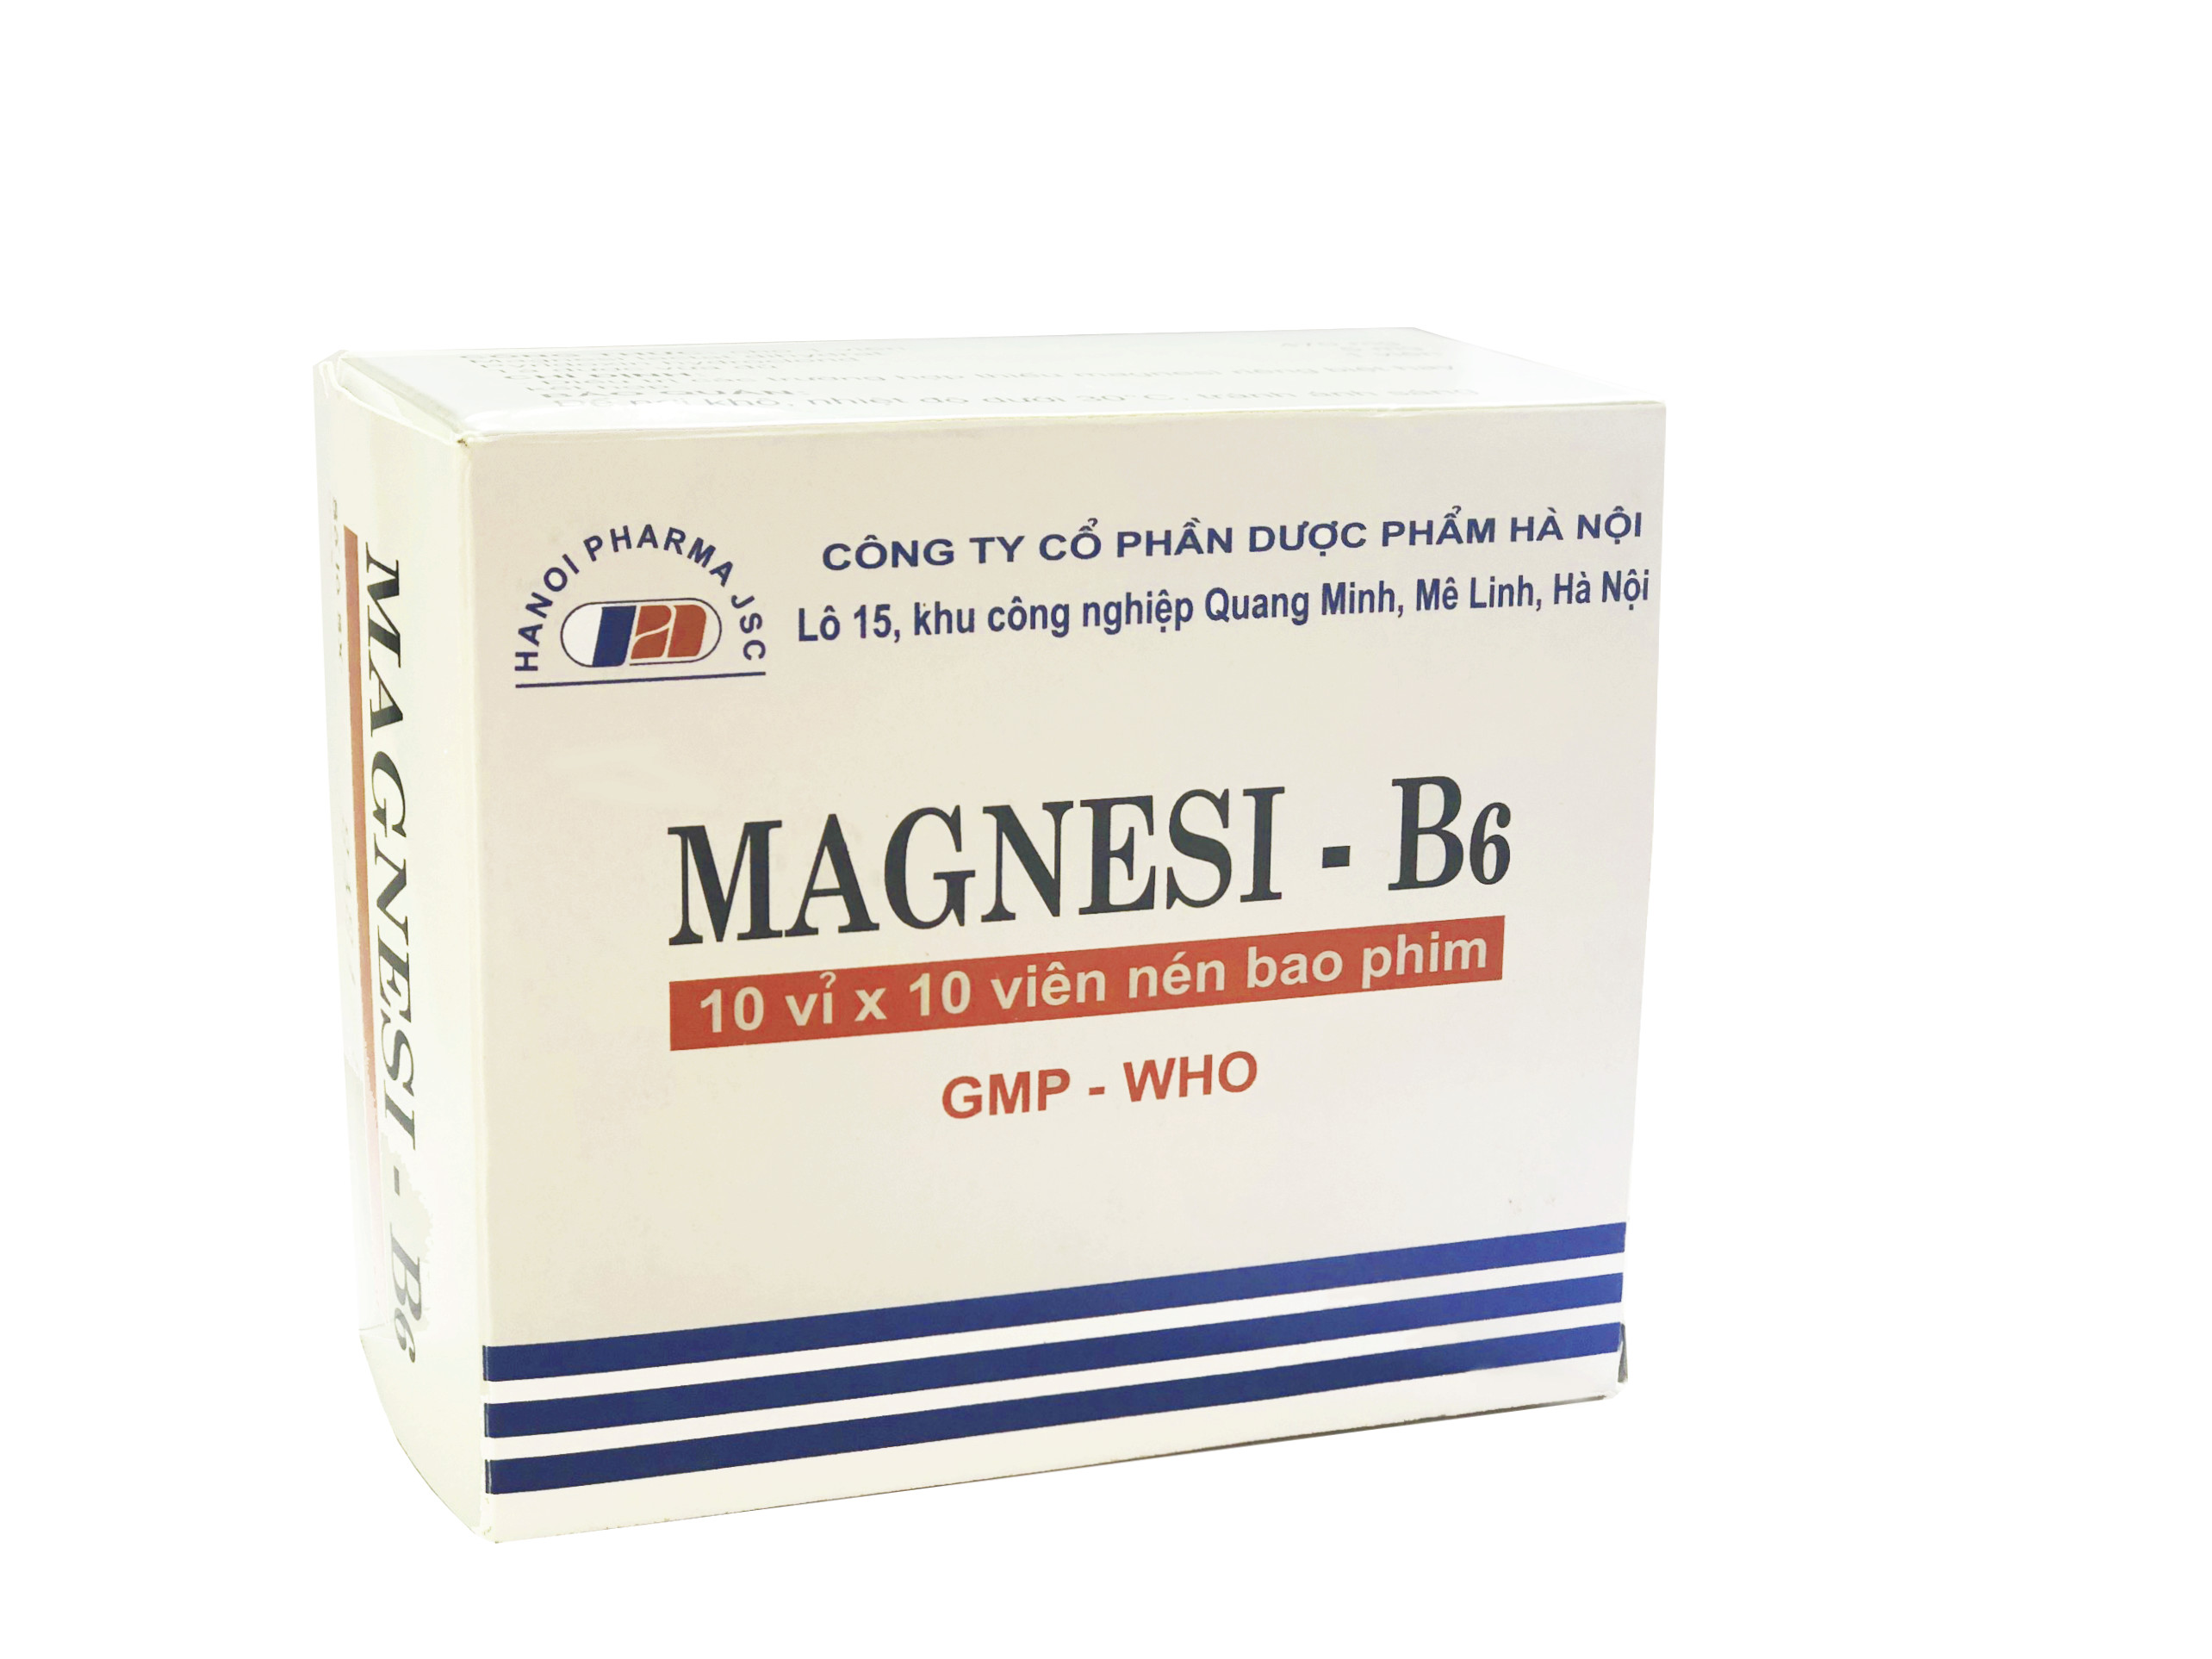 Magnesi - B6